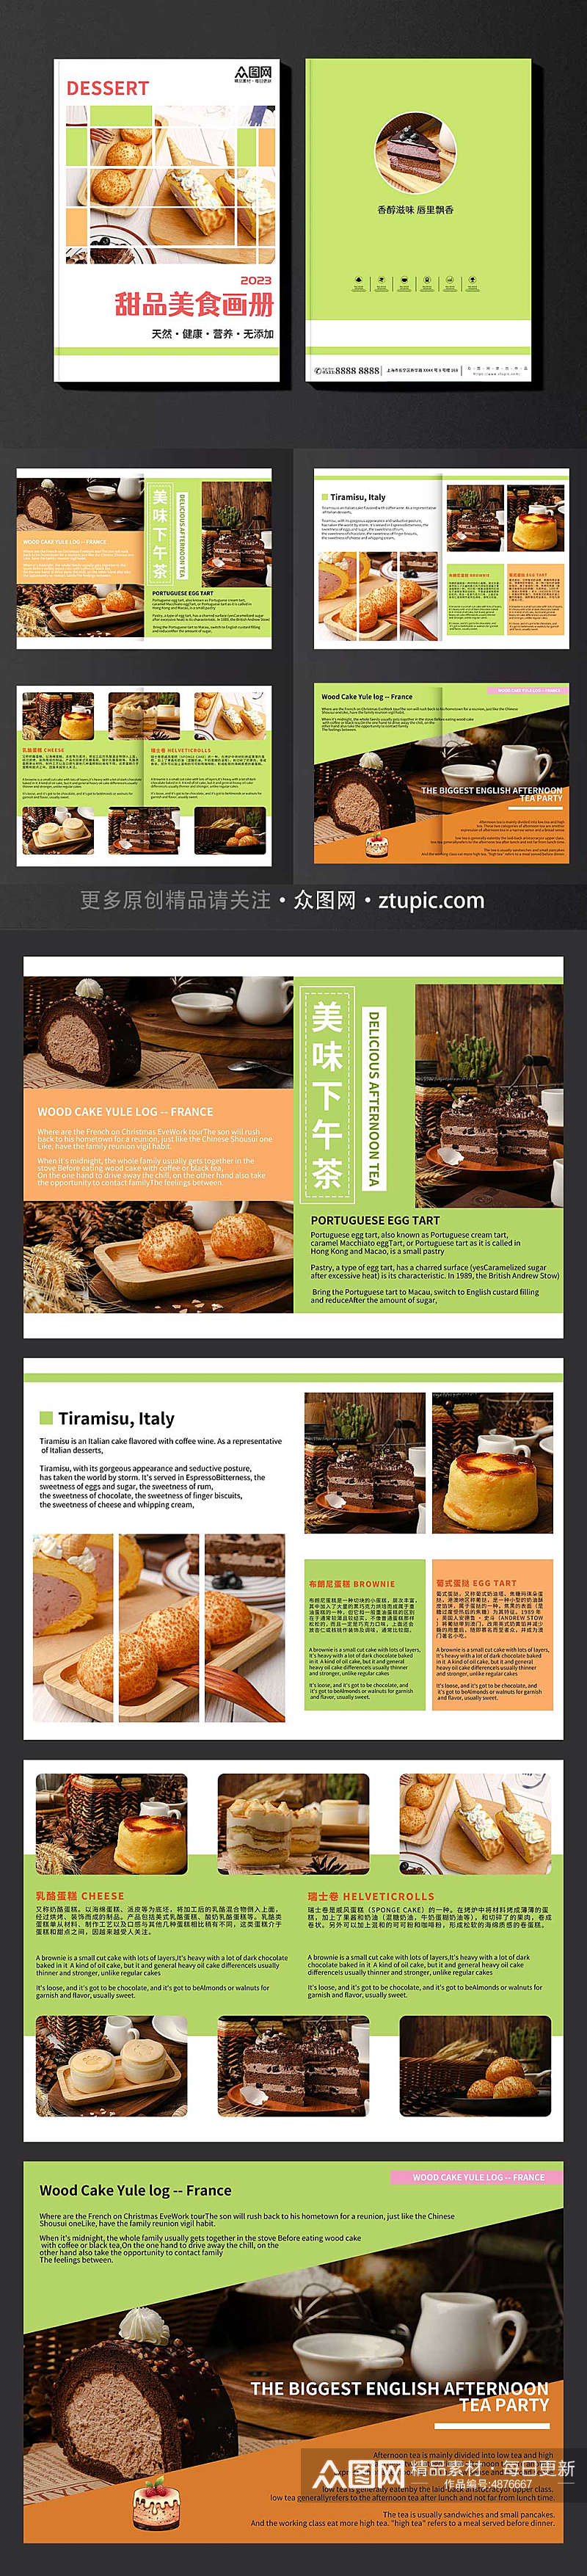 简约甜点甜品蛋糕下午茶美食宣传册画册素材